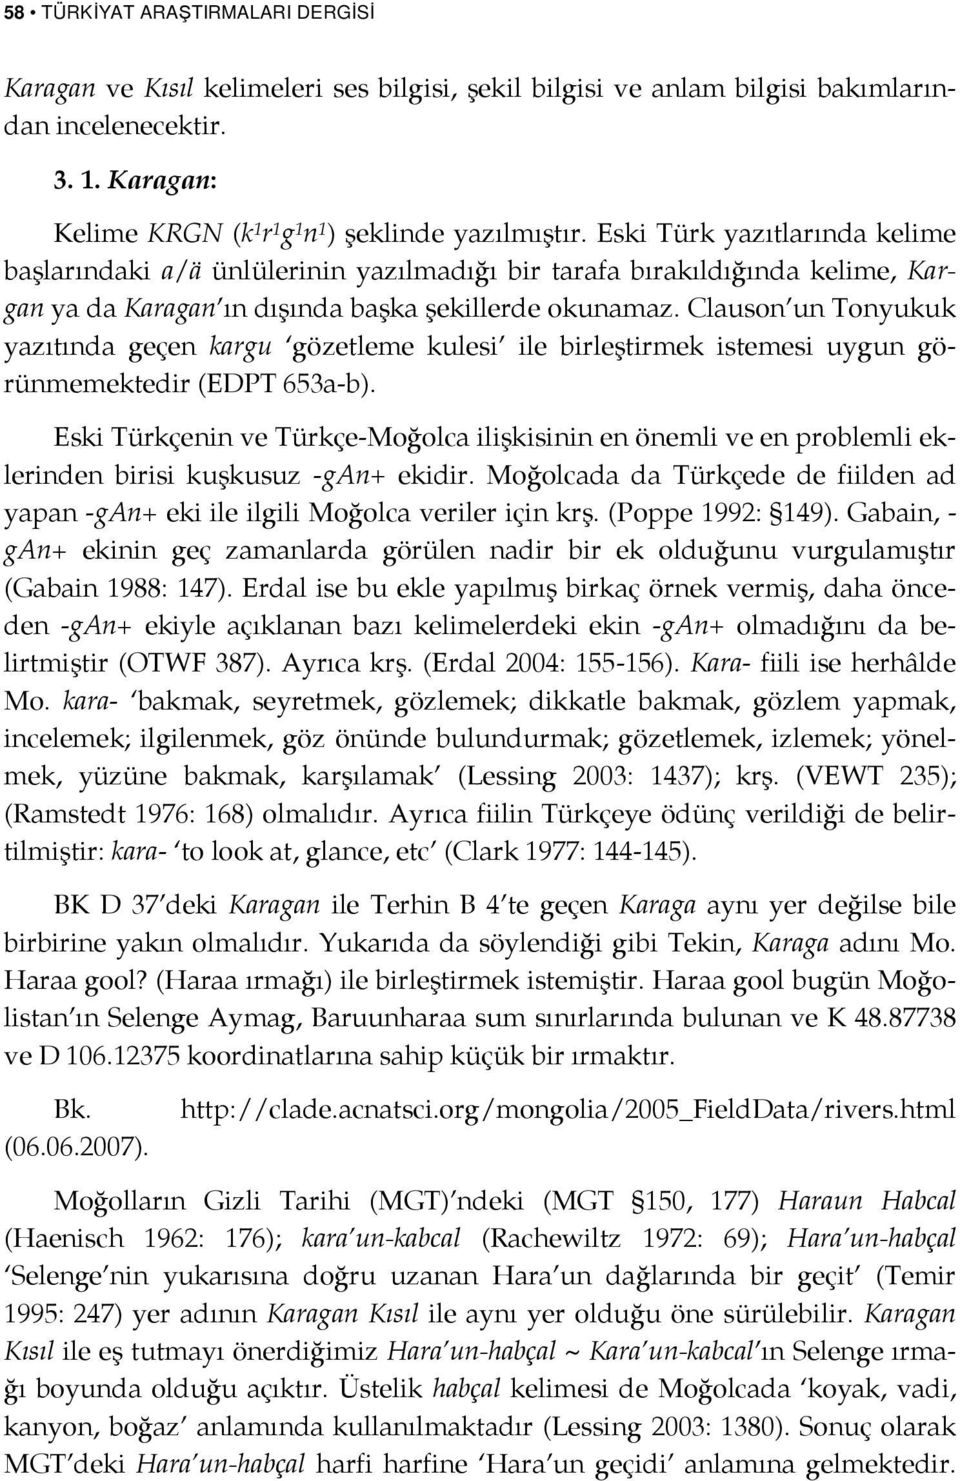 Eski Türk yazıtlarında kelime başlarındaki a/ä ünlülerinin yazılmadığı bir tarafa bırakıldığında kelime, Kargan ya da Karagan ın dışında başka şekillerde okunamaz.